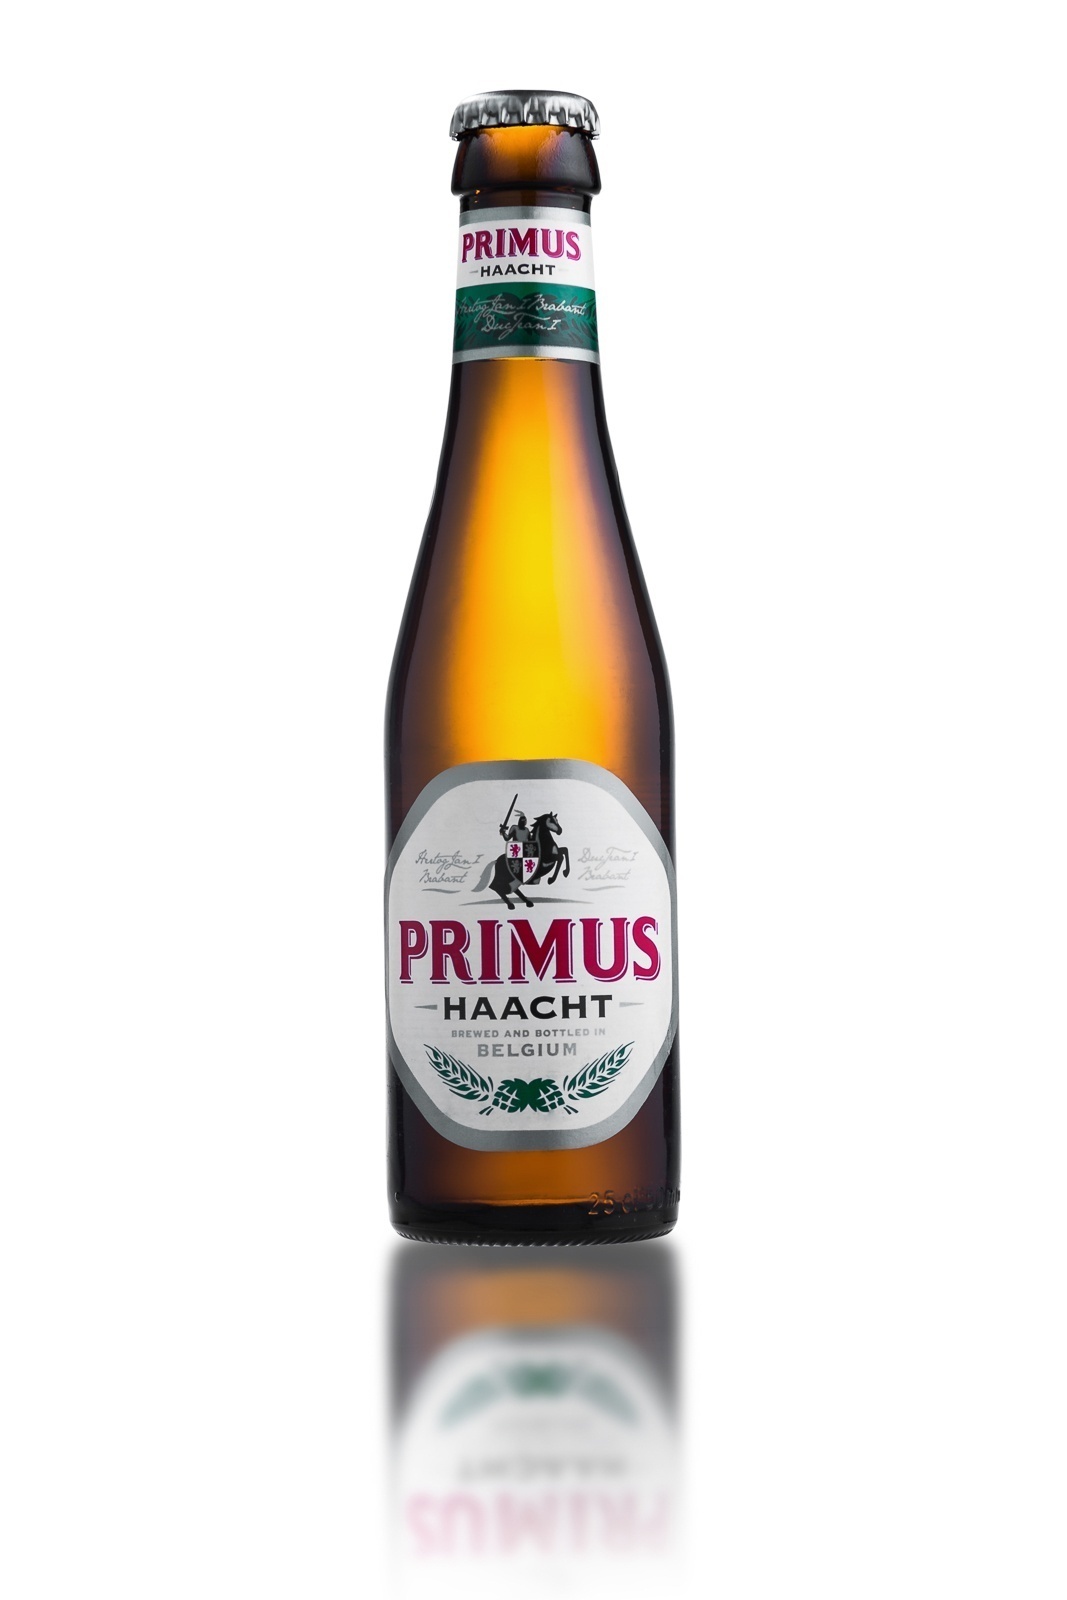 Primus packshot